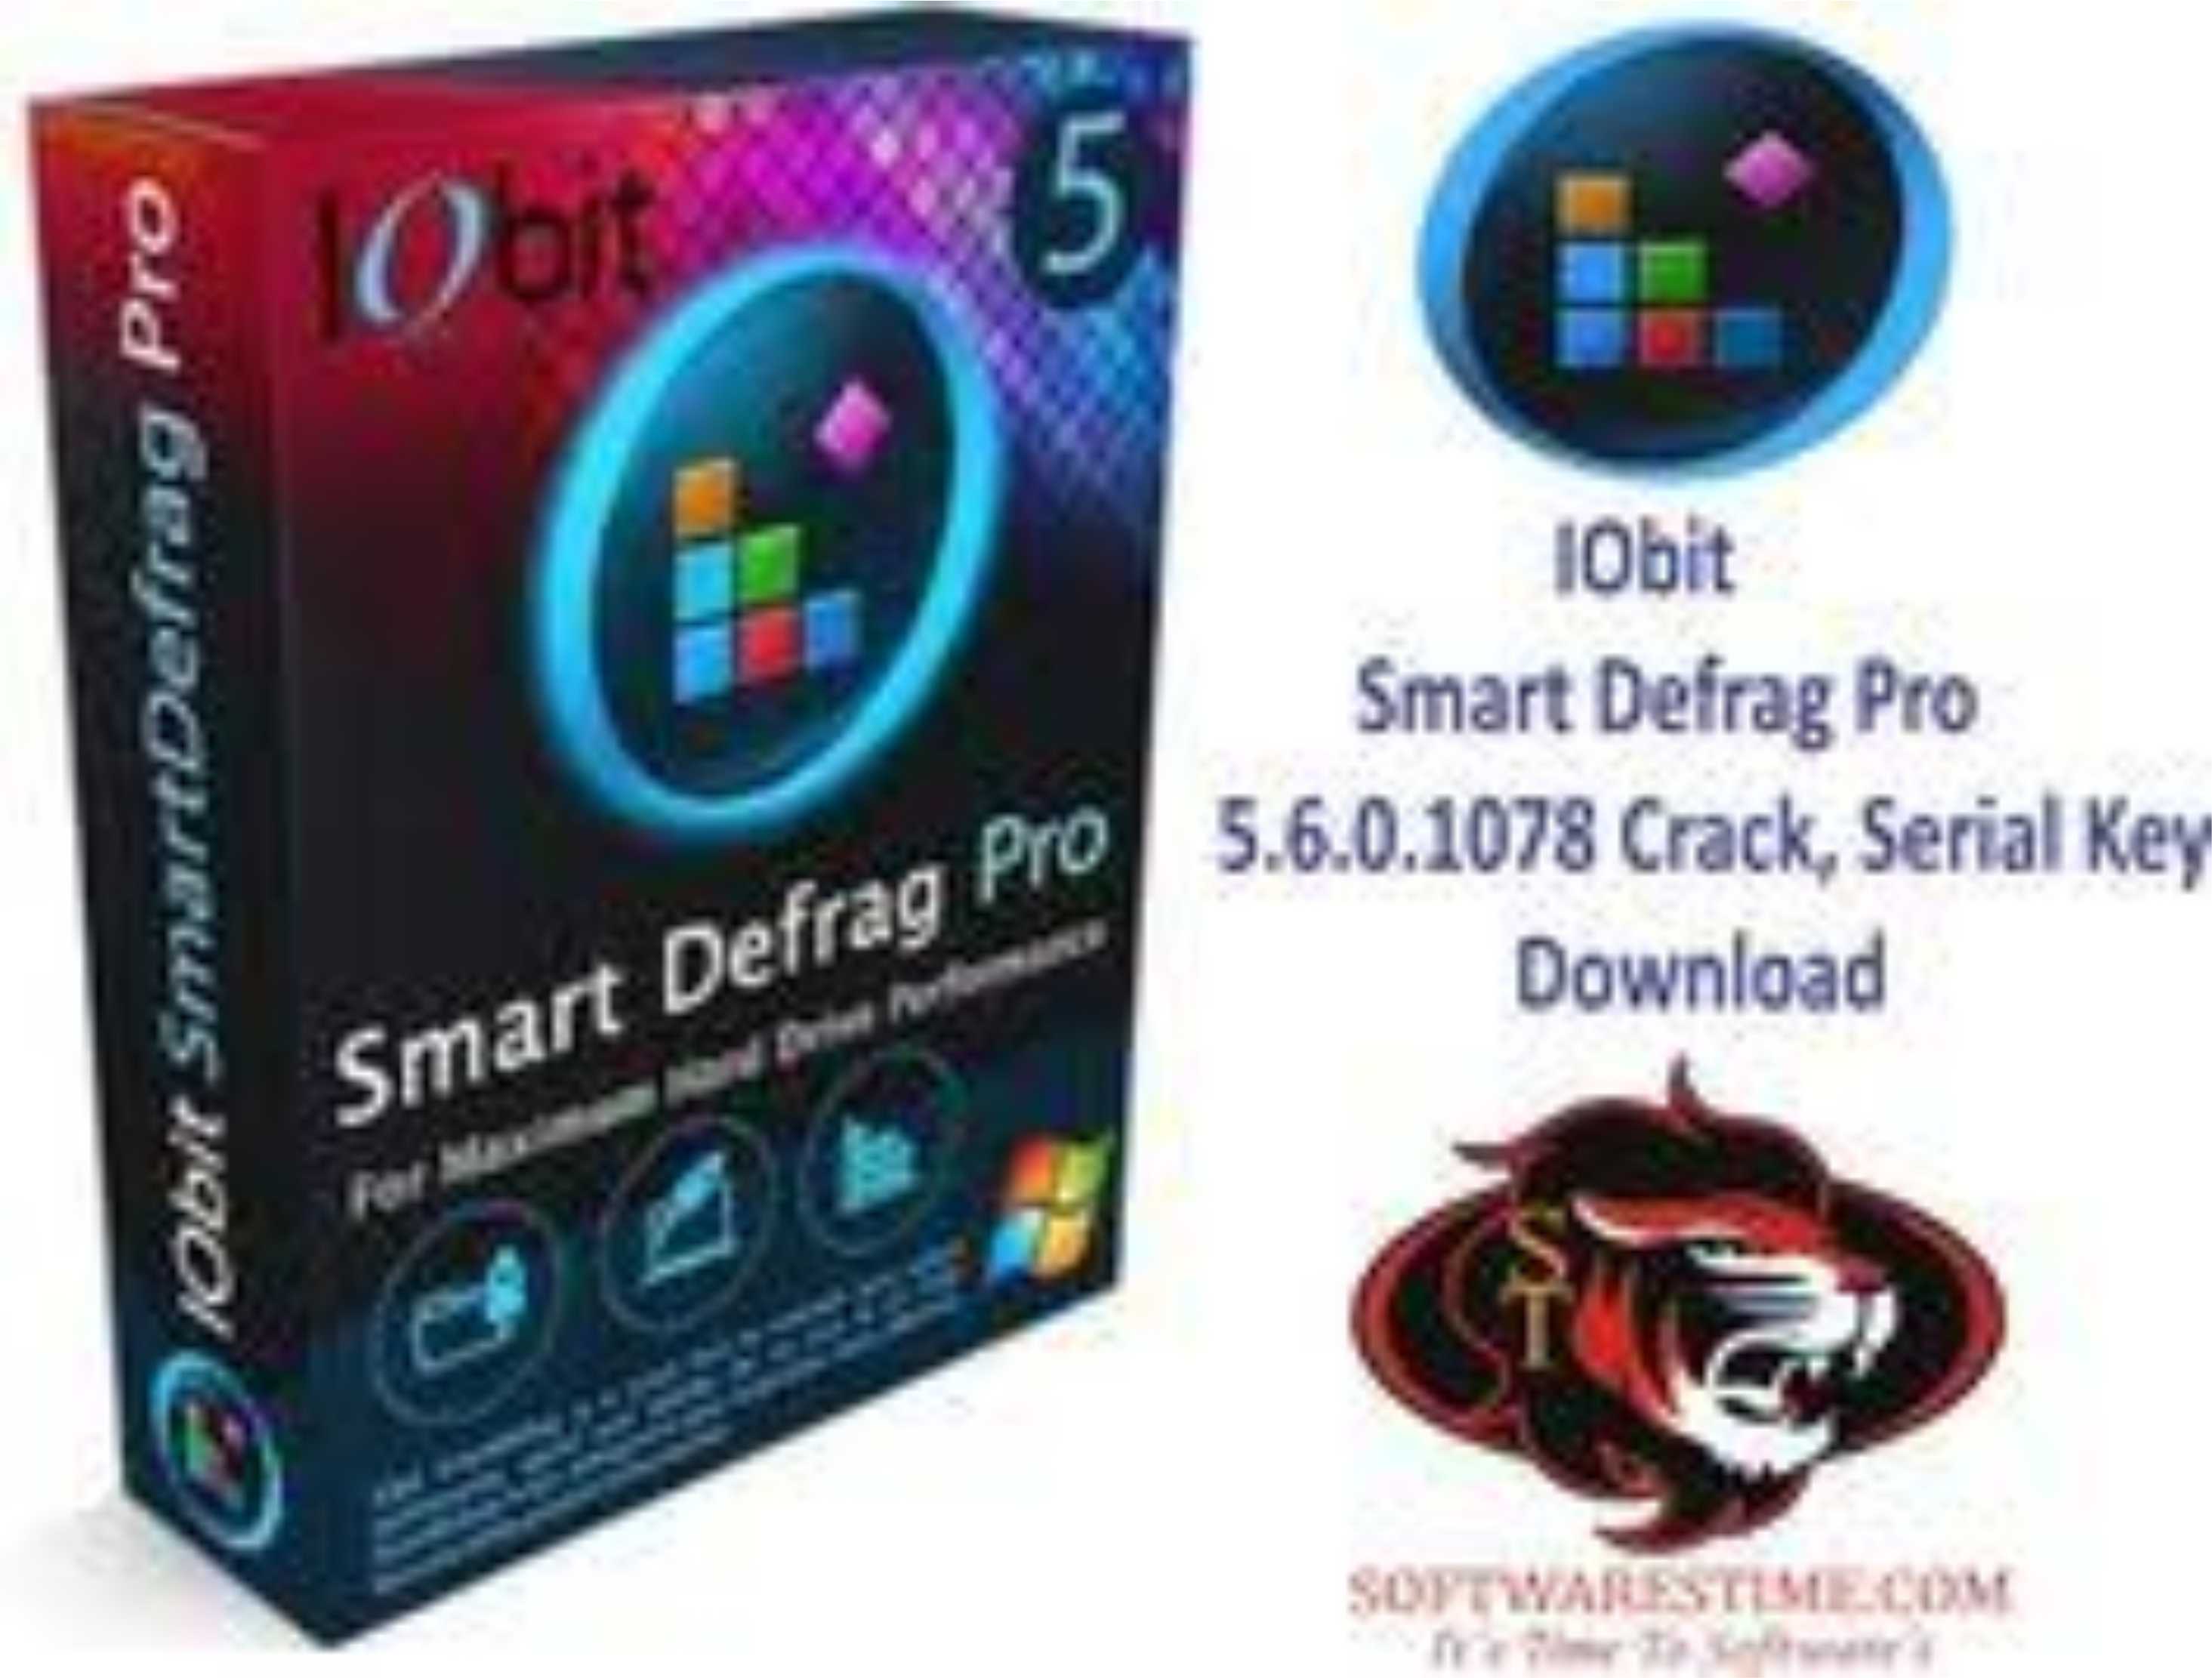 IObit Smart Defrag 9.0.0.307 for mac download